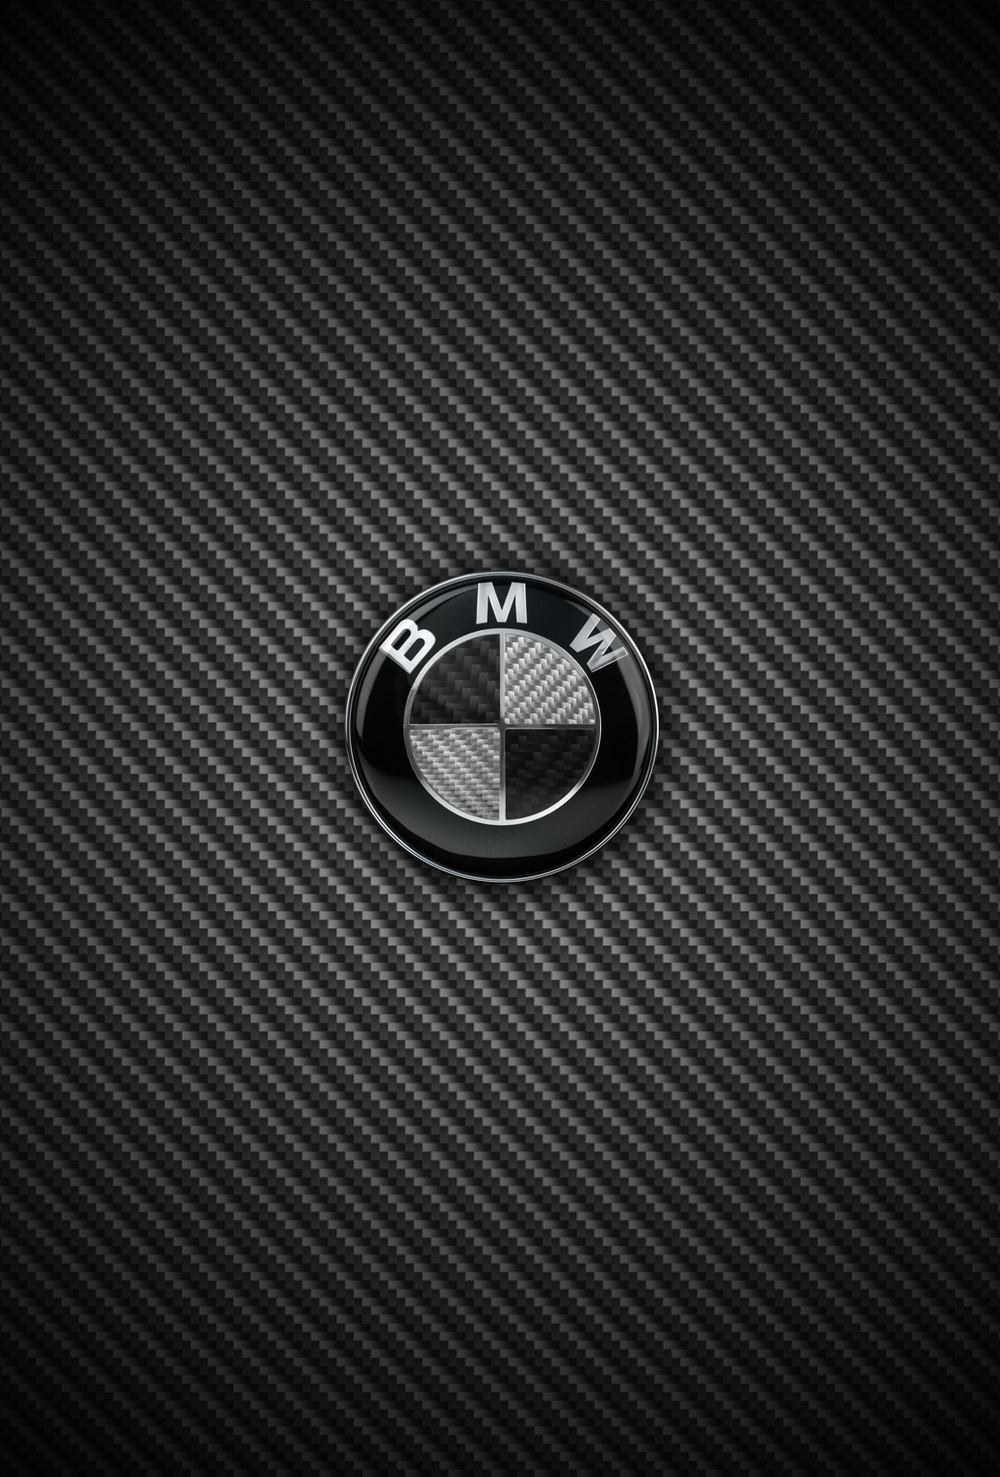 Bmw Logo Iphone Wallpaper - image #353